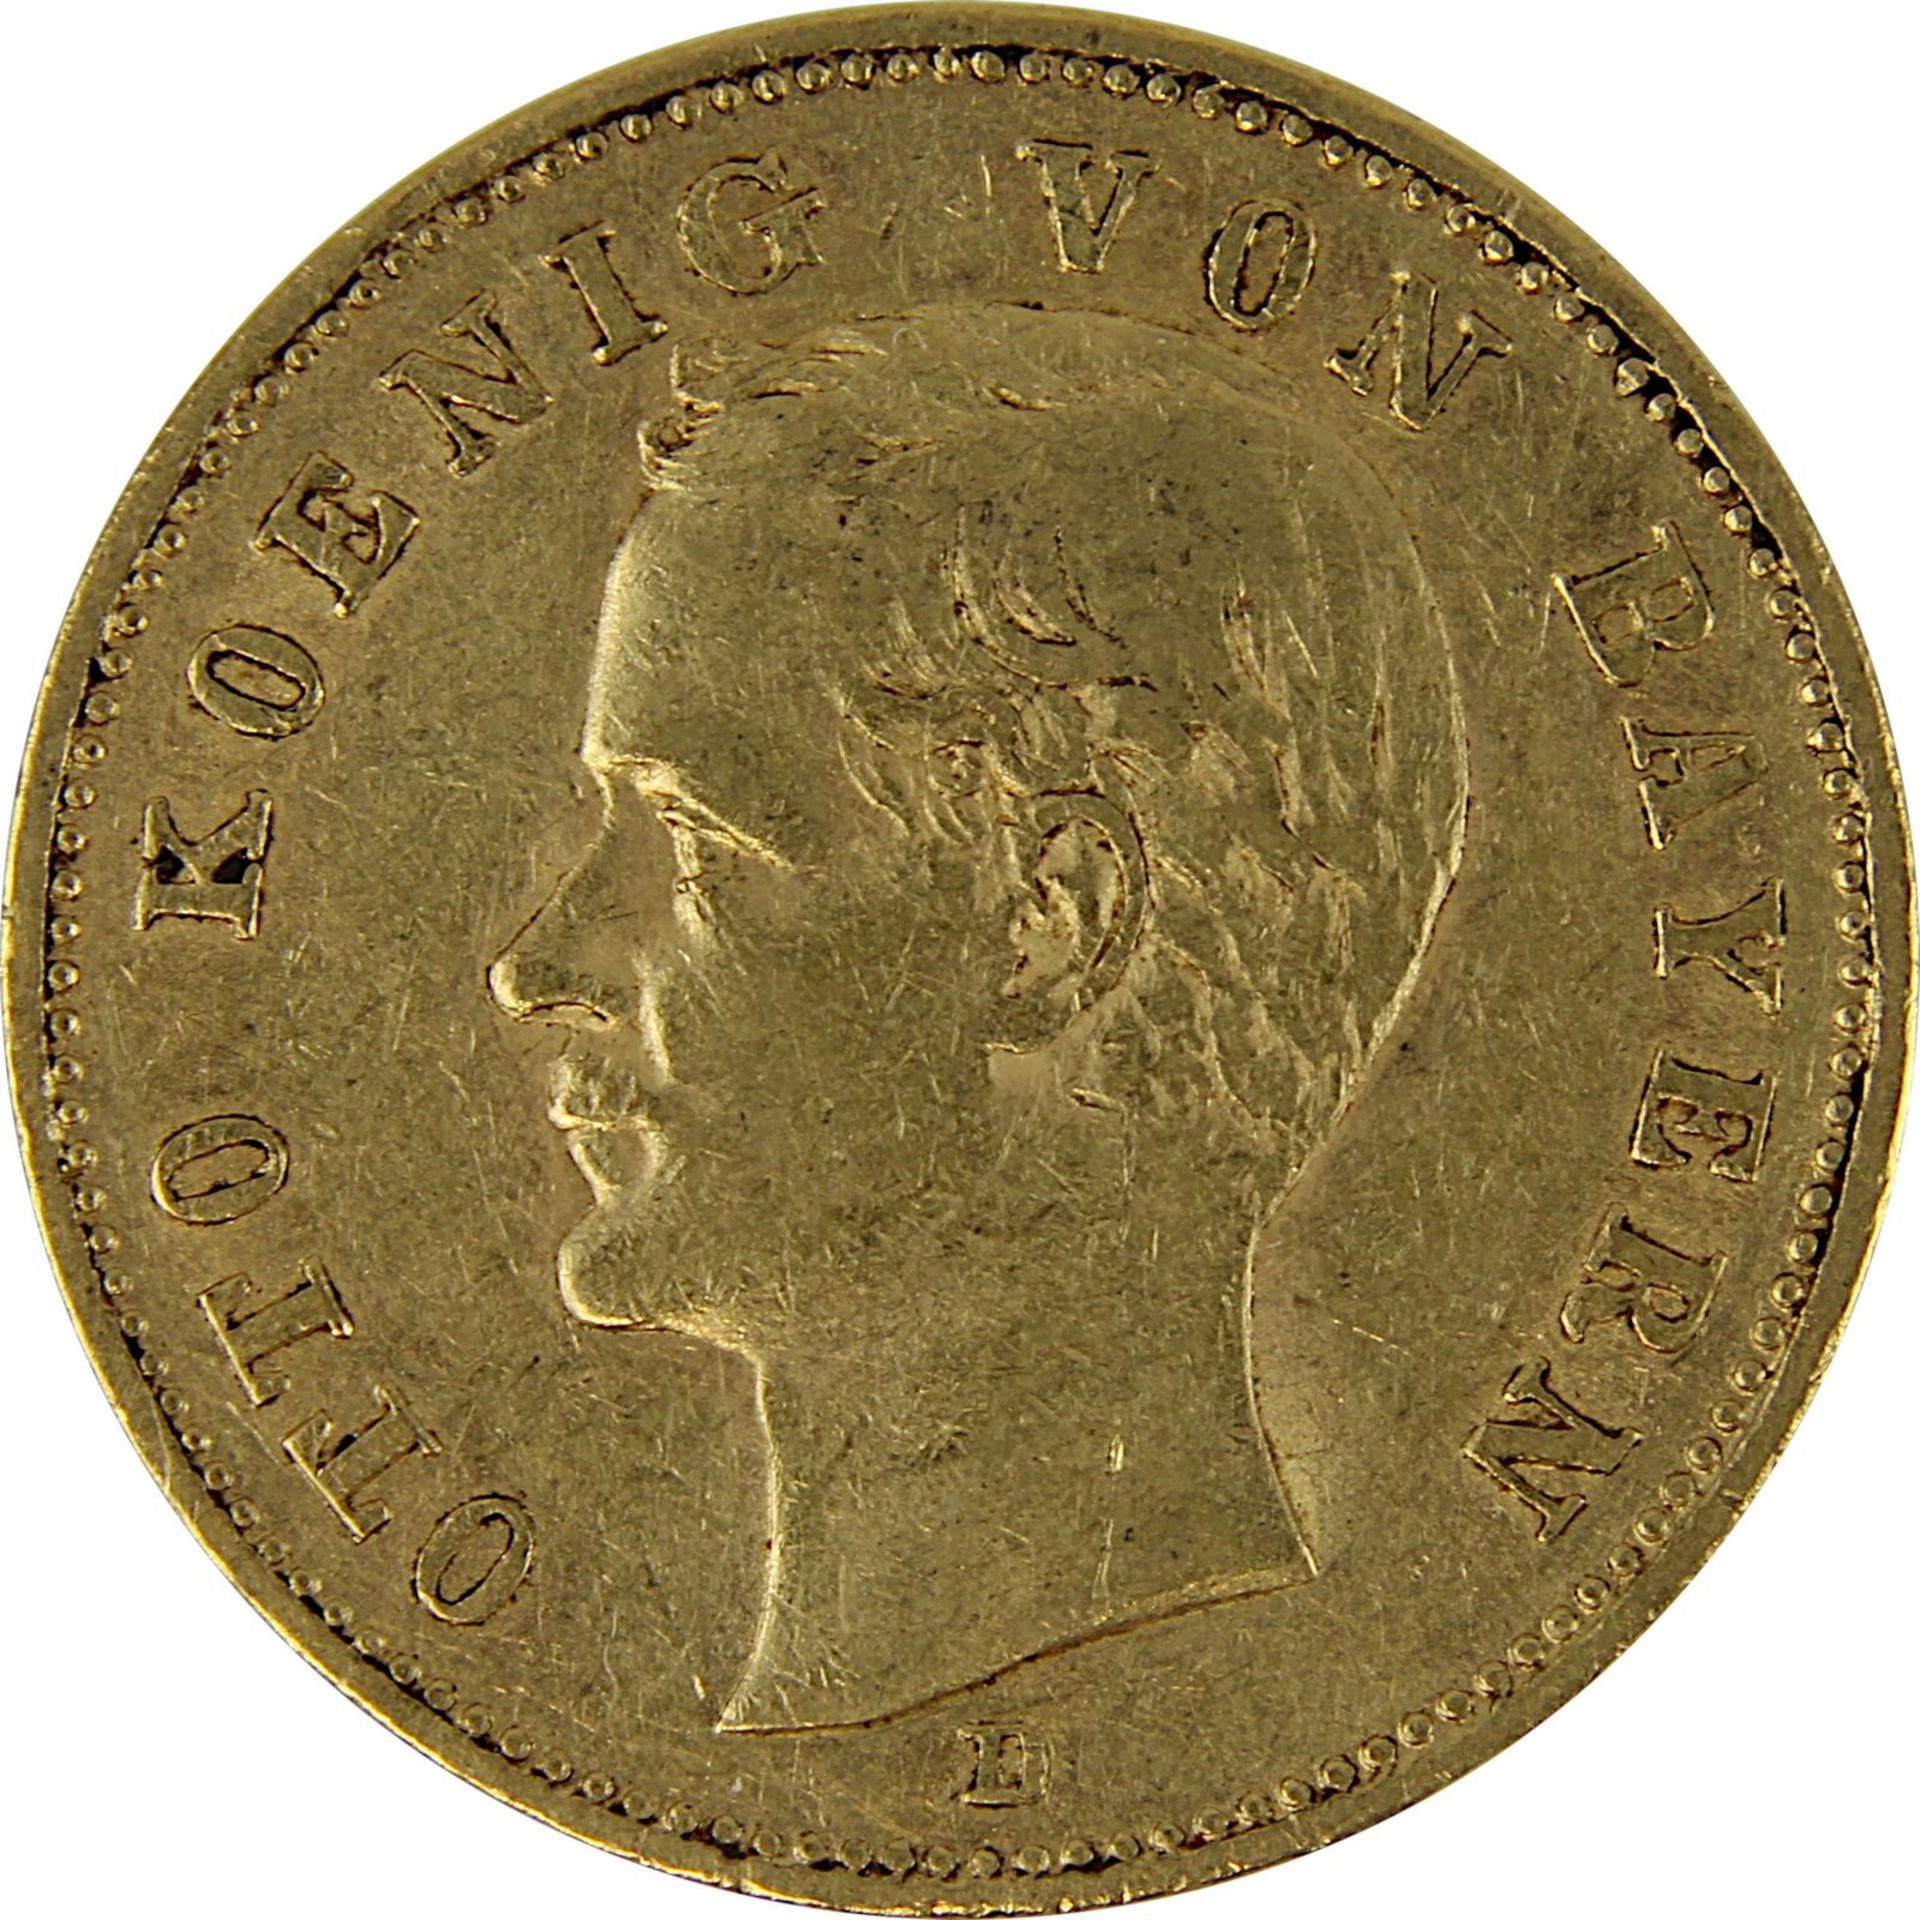 Goldmünze zu 20 Mark, Bayern - Deutsches Reich 1895, Avers: Kopf Otto König von Bayern nach links u. - Image 2 of 3